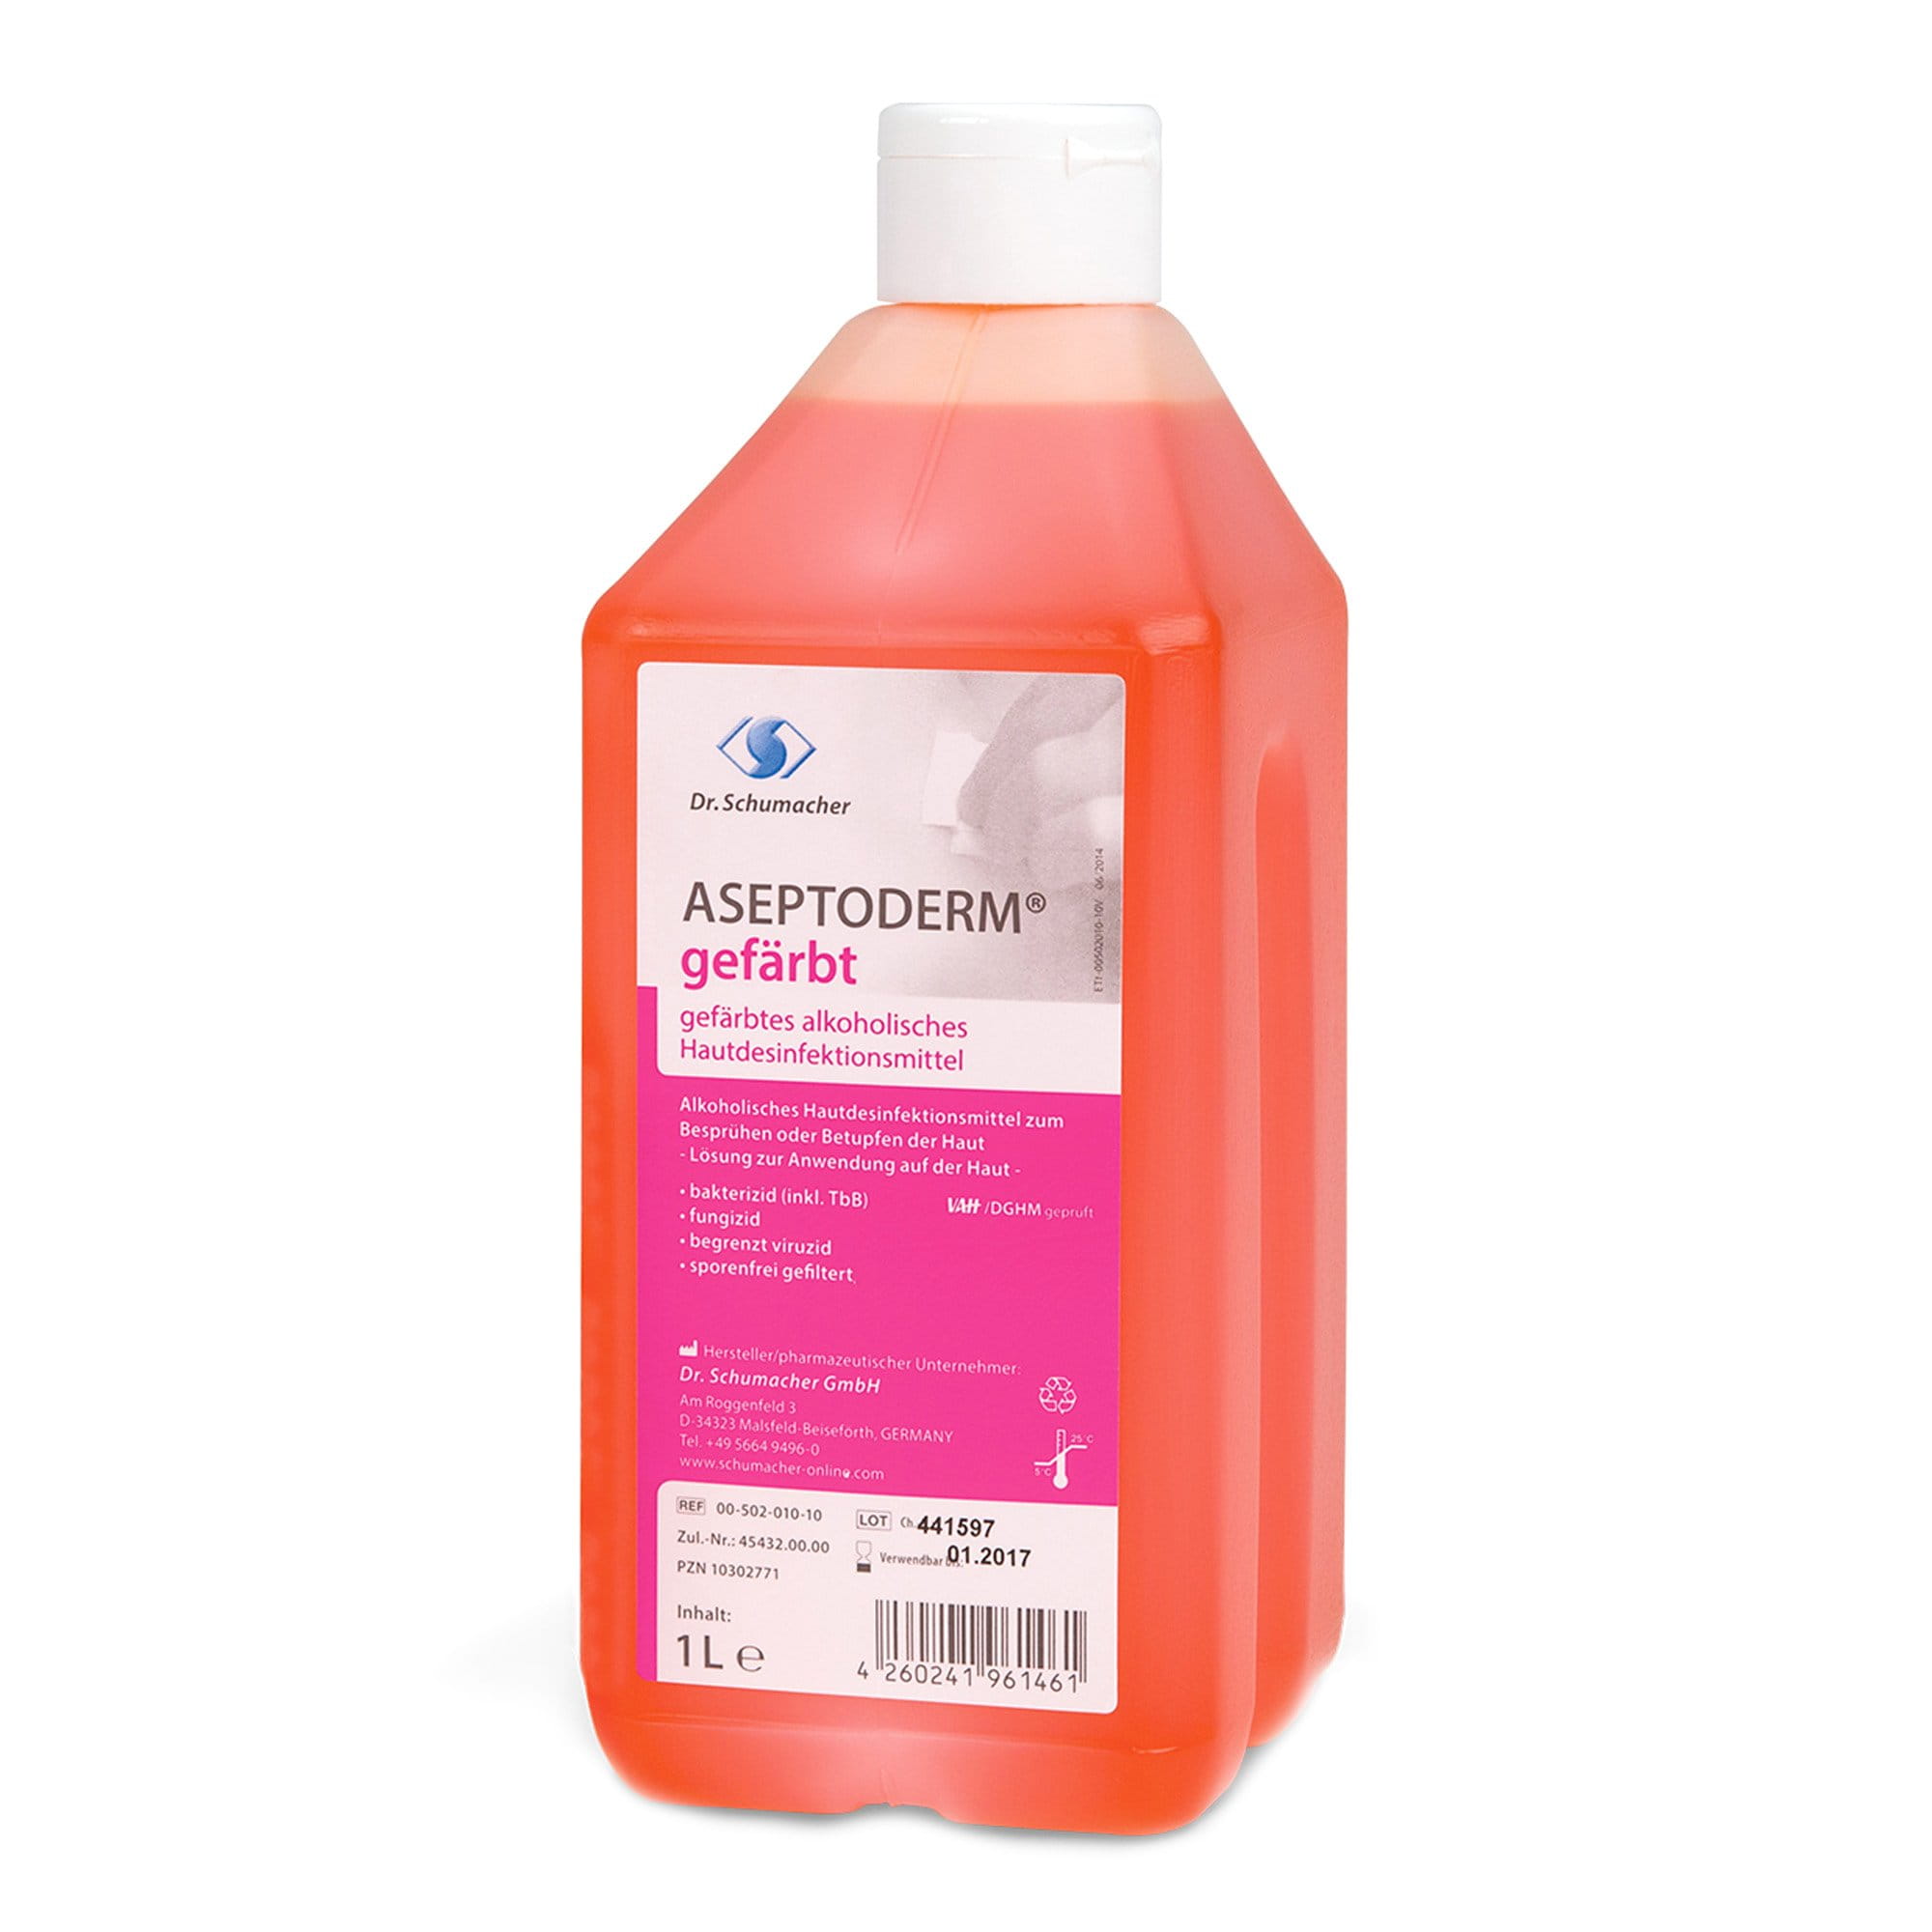 Dr. Schumacher Aseptoderm gefärbt - alkoholisches Hautdesinfektionsmittel 1 Liter Flasche 00-502-010-10_1